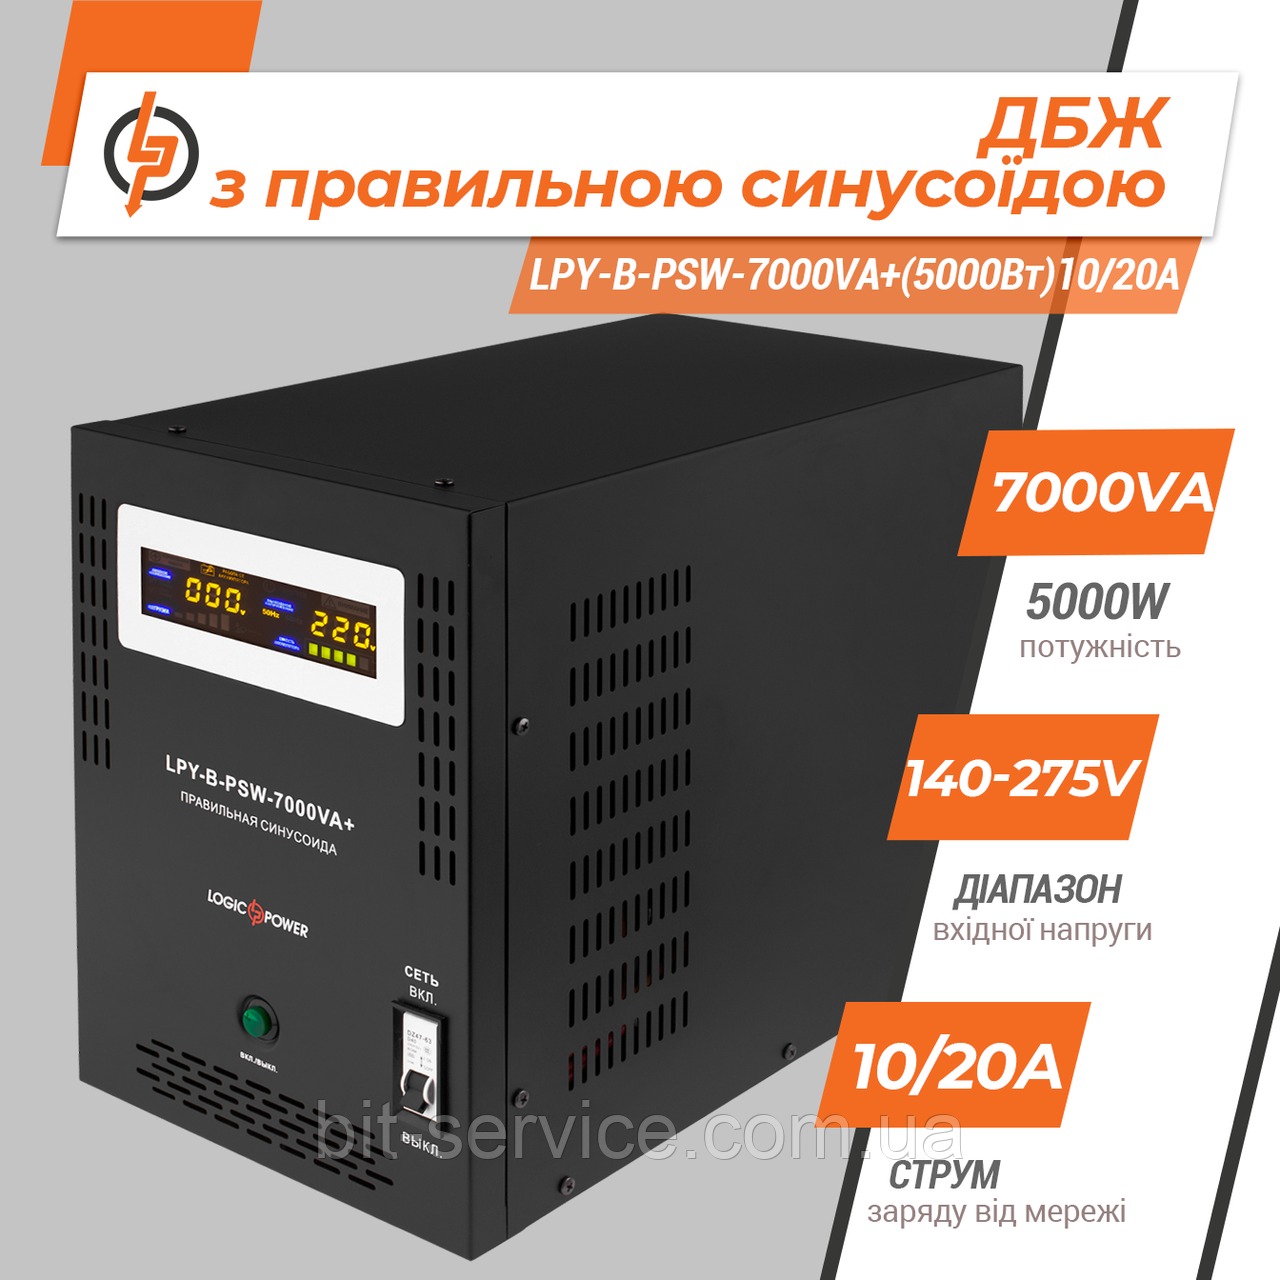 ДБЖ LogicPower LPY-B-PSW-7000VA+ (5000Вт) 48V 10A/20A с правильною синусоїдою